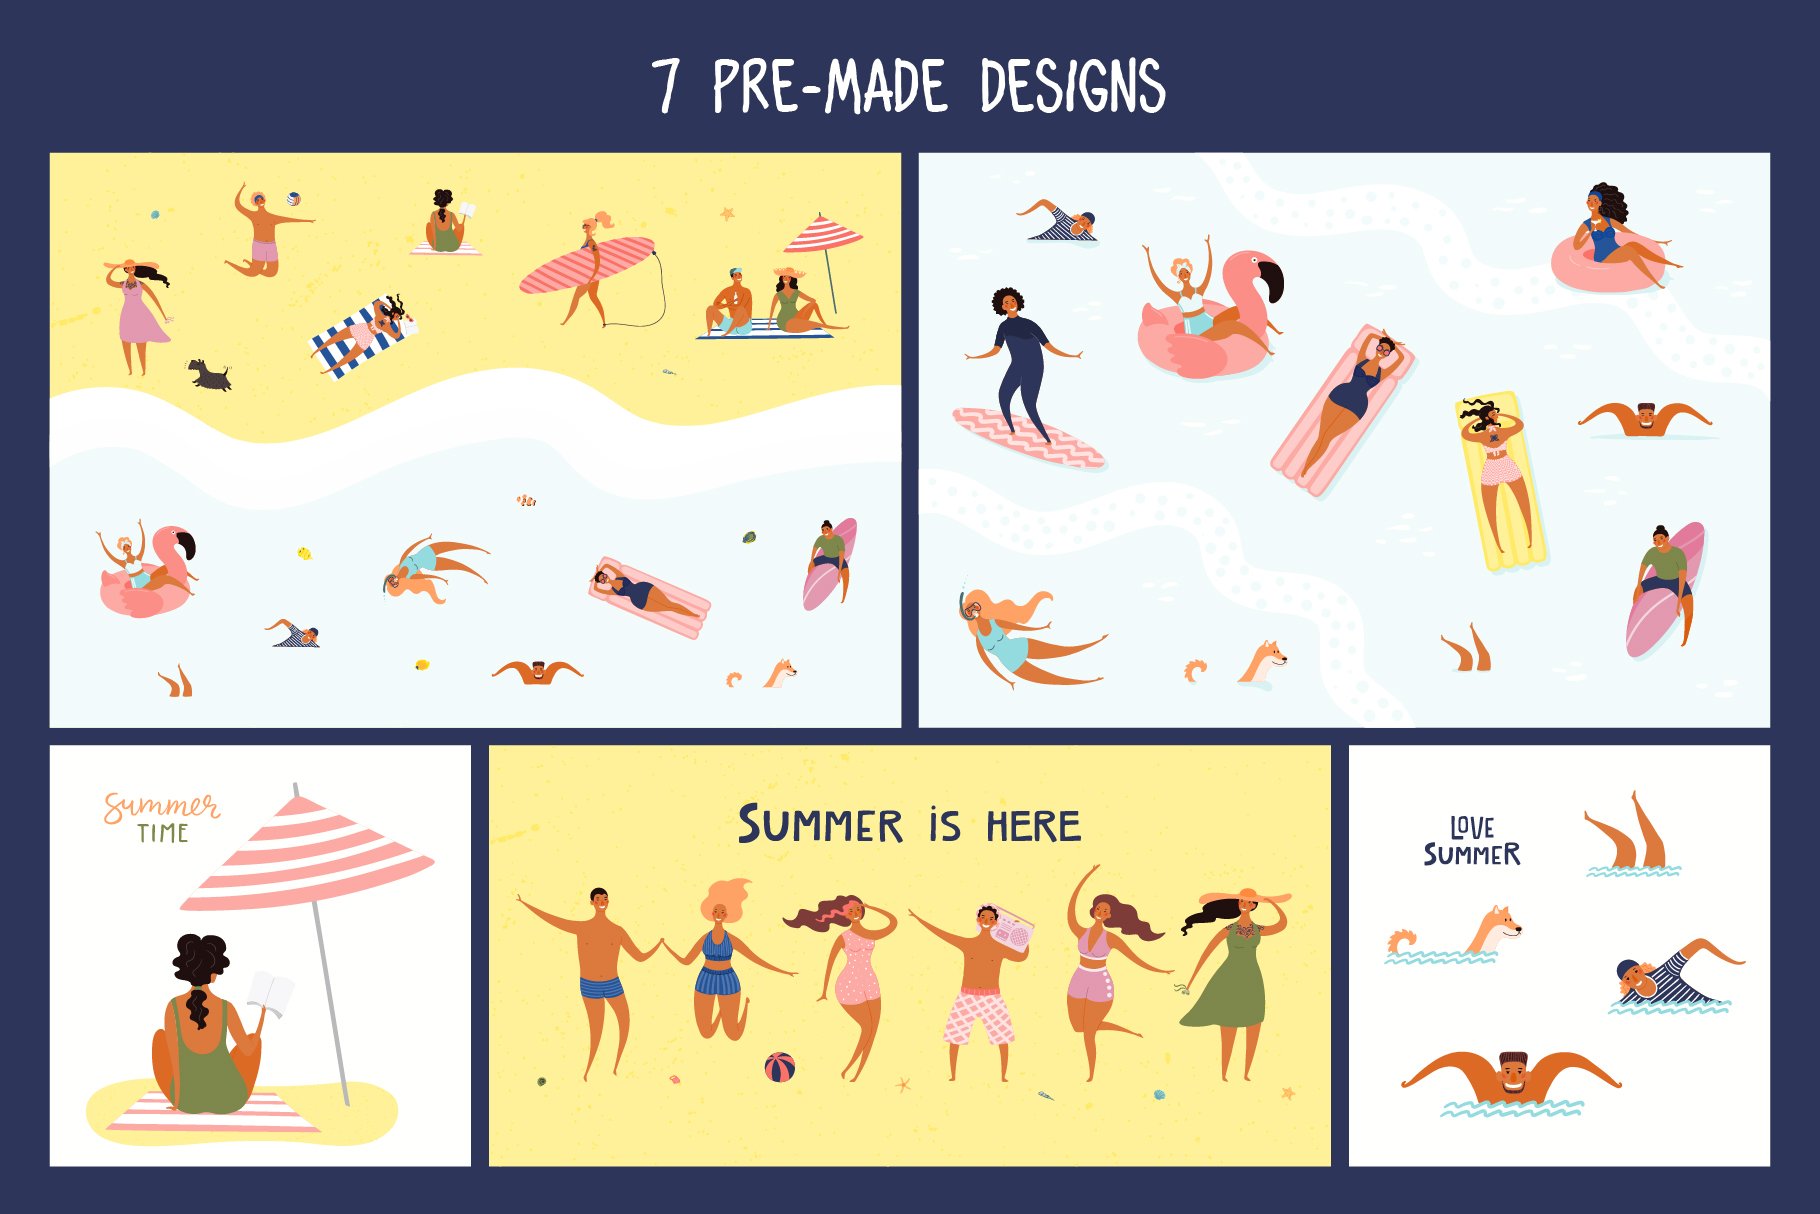 夏日海滩度假海滩卡通人物夏季假日元素插画合集 Beach P